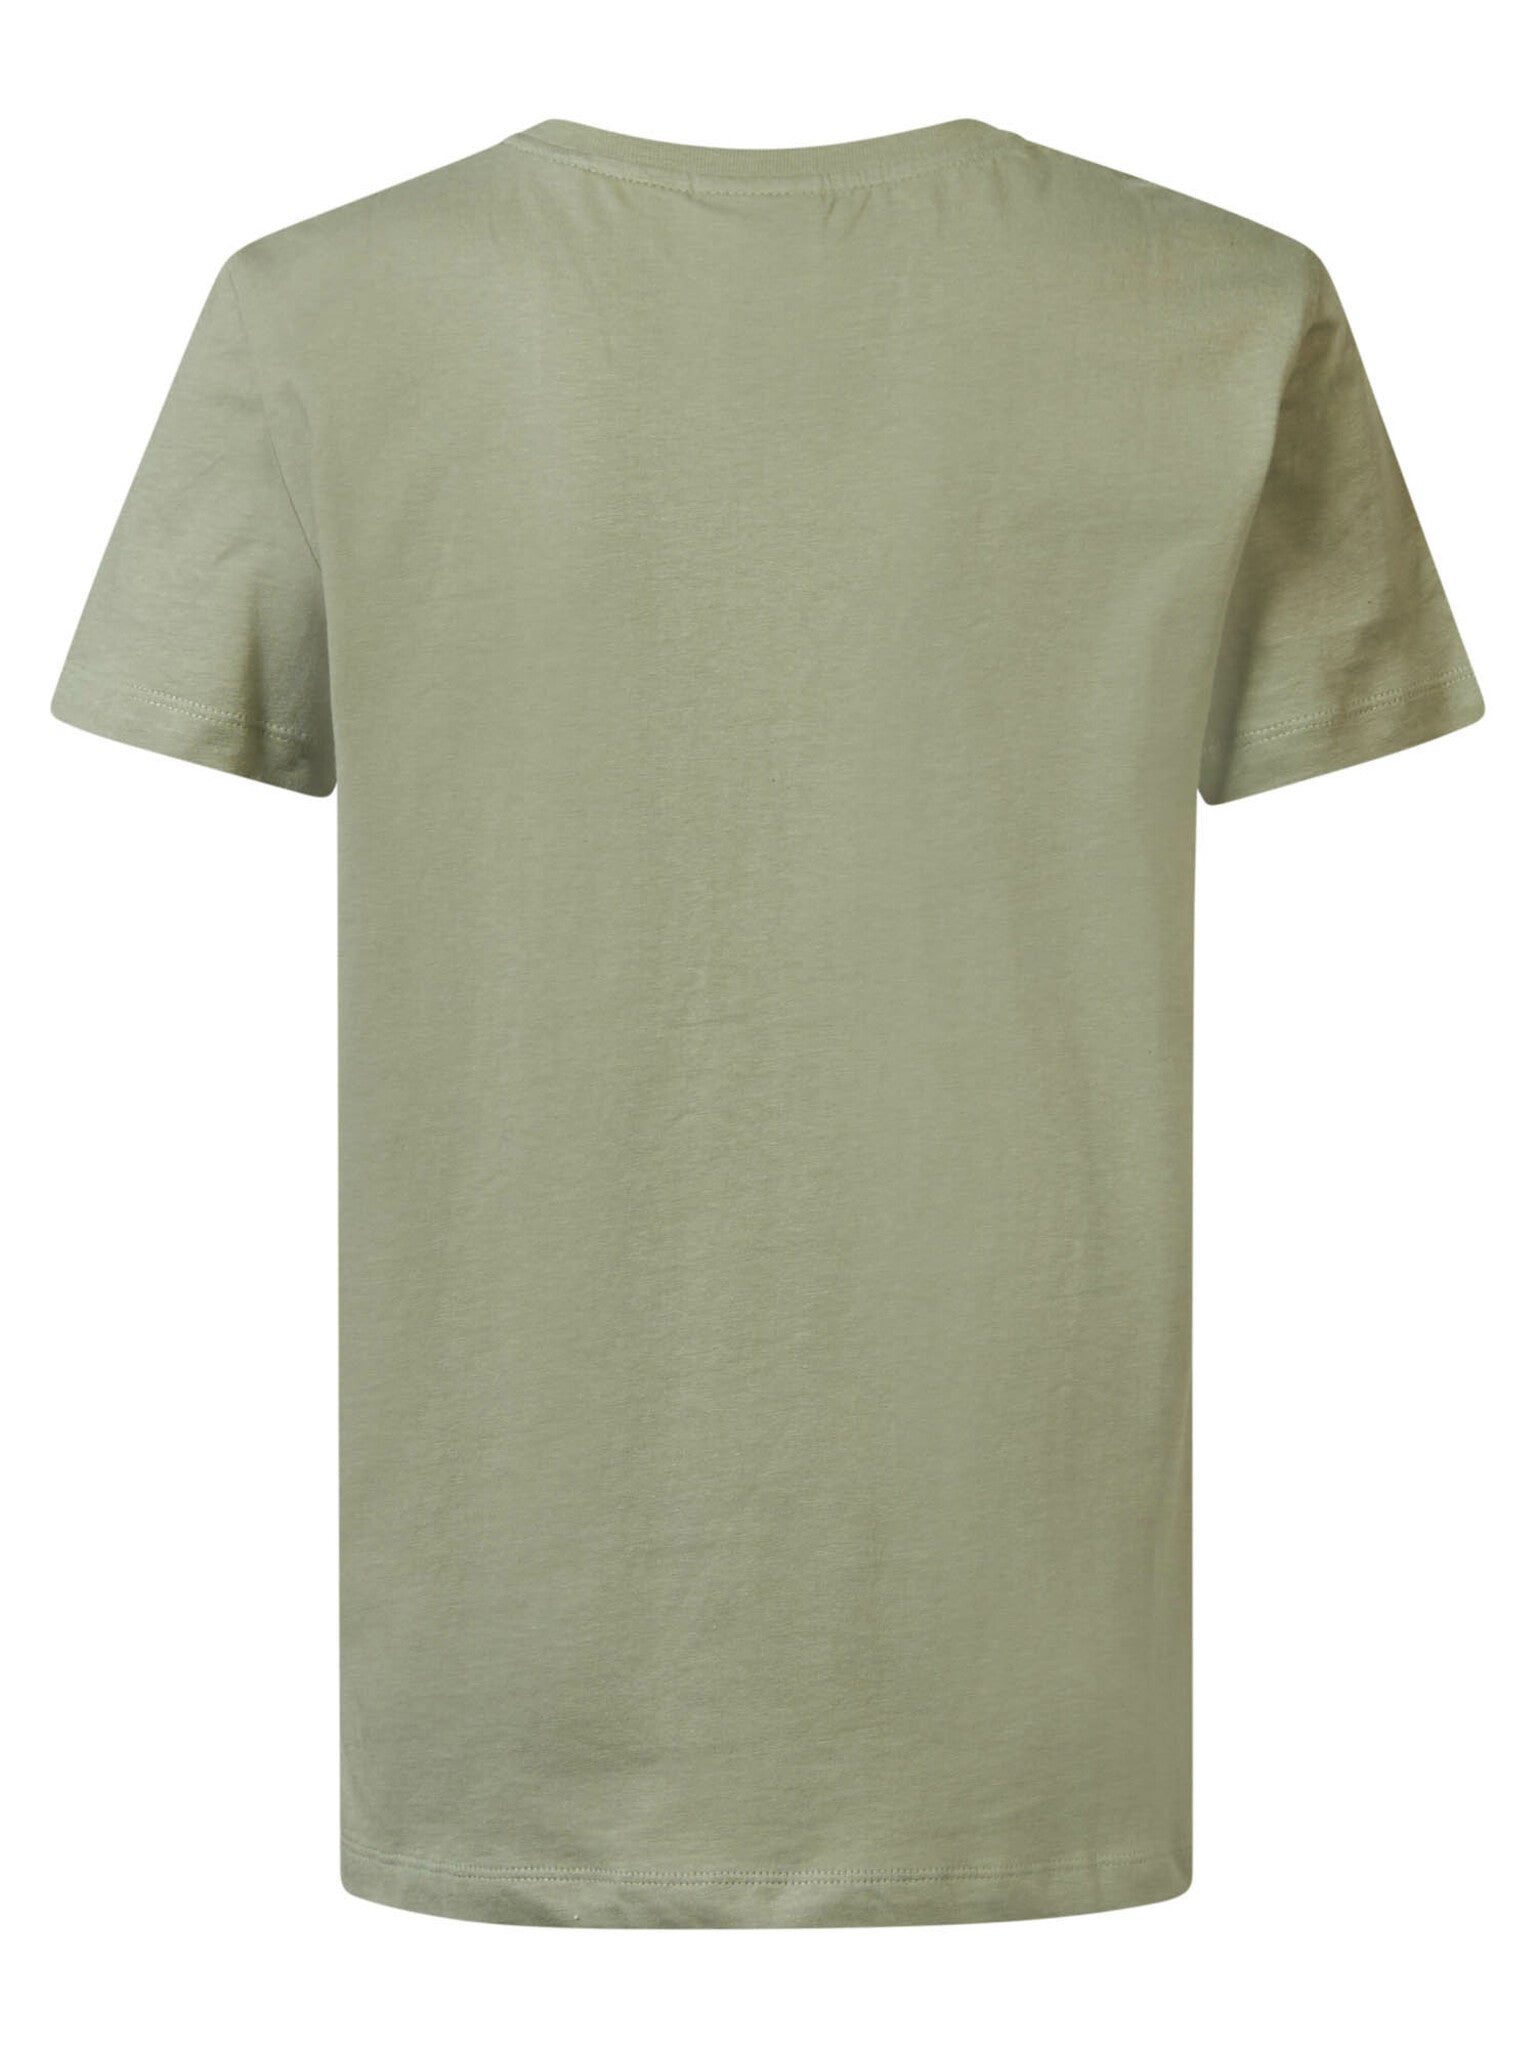 Jongens Boys T-Shirt SS Round Neck van Petrol in de kleur Sage Green in maat 176.